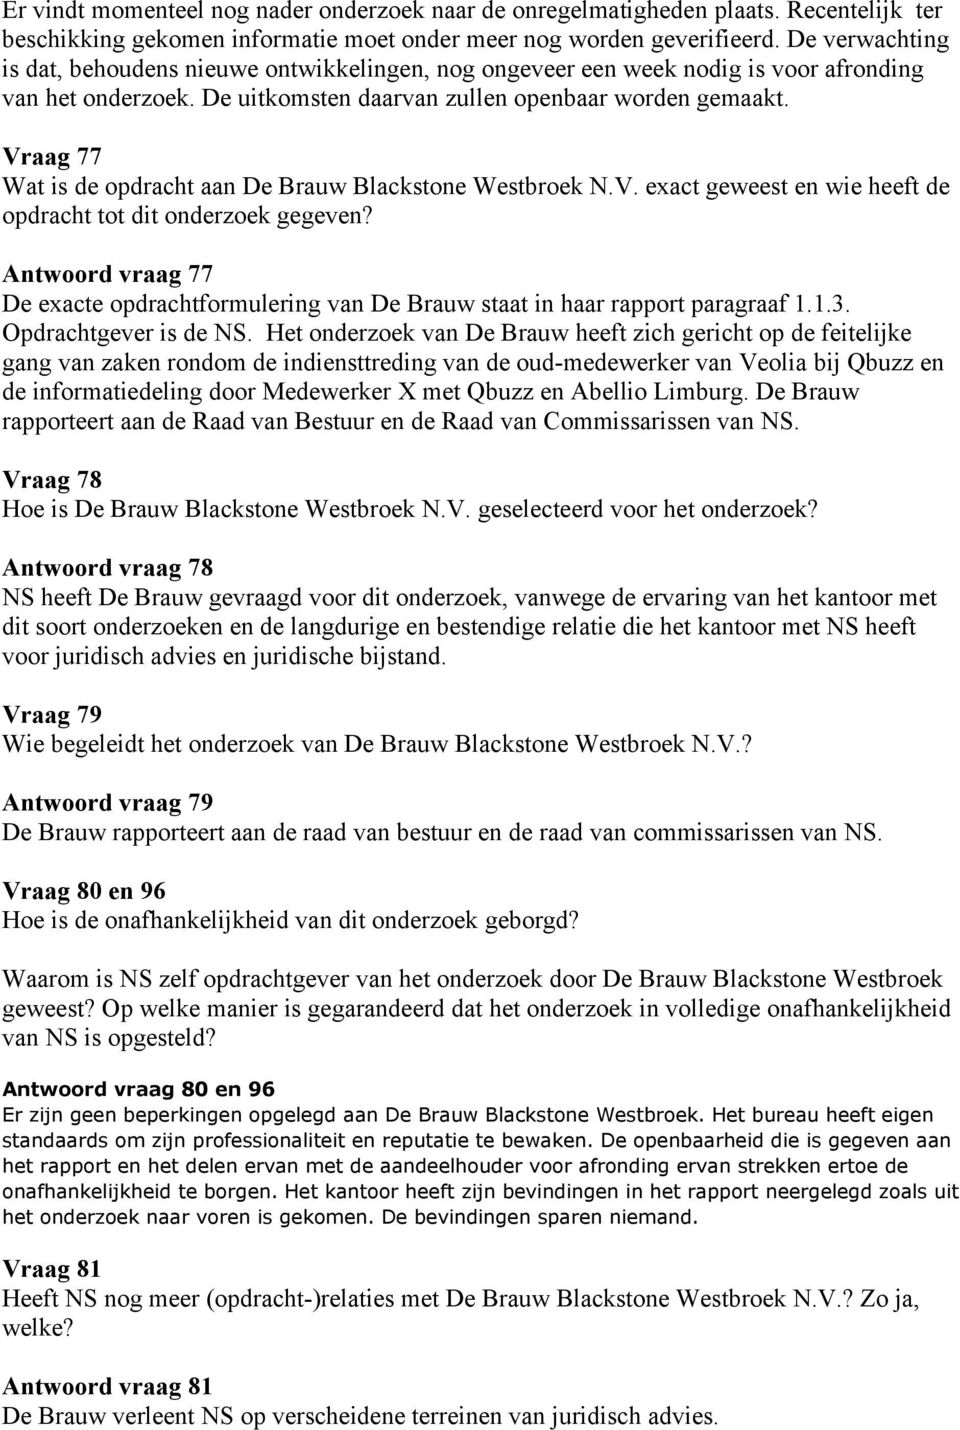 Vraag 77 Wat is de opdracht aan De Brauw Blackstone Westbroek N.V. exact geweest en wie heeft de opdracht tot dit onderzoek gegeven?